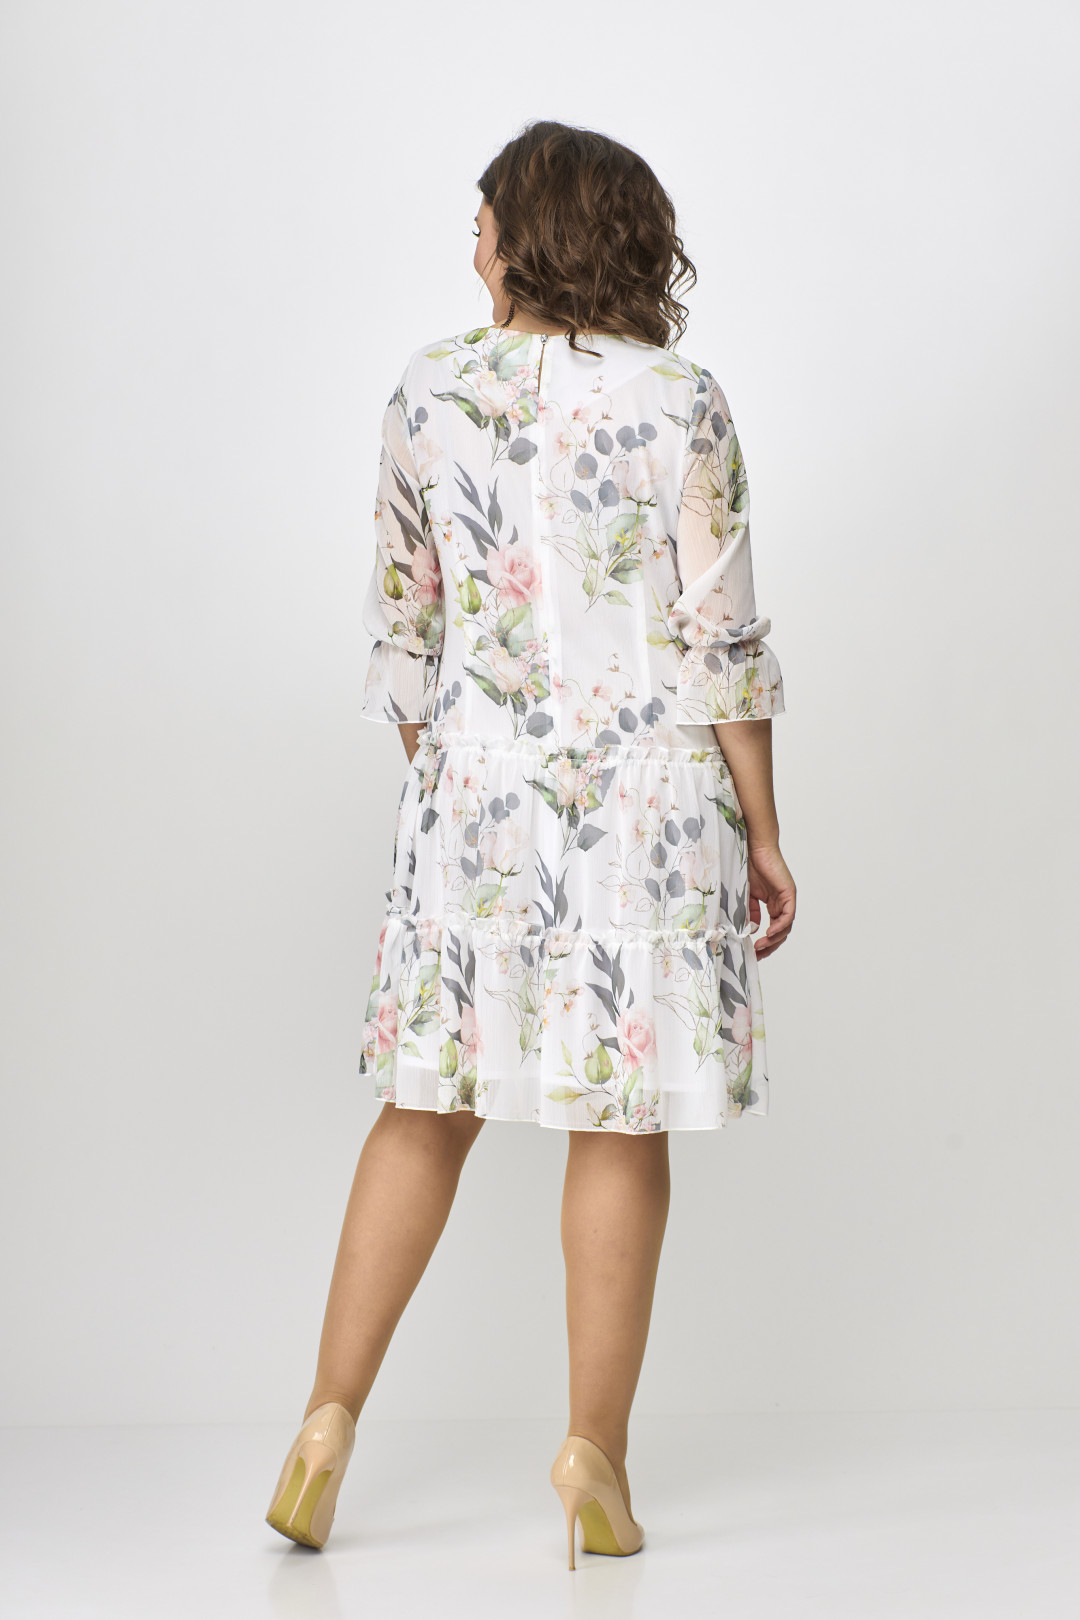 Платье Мода-Версаль 2328 молочный+цветы